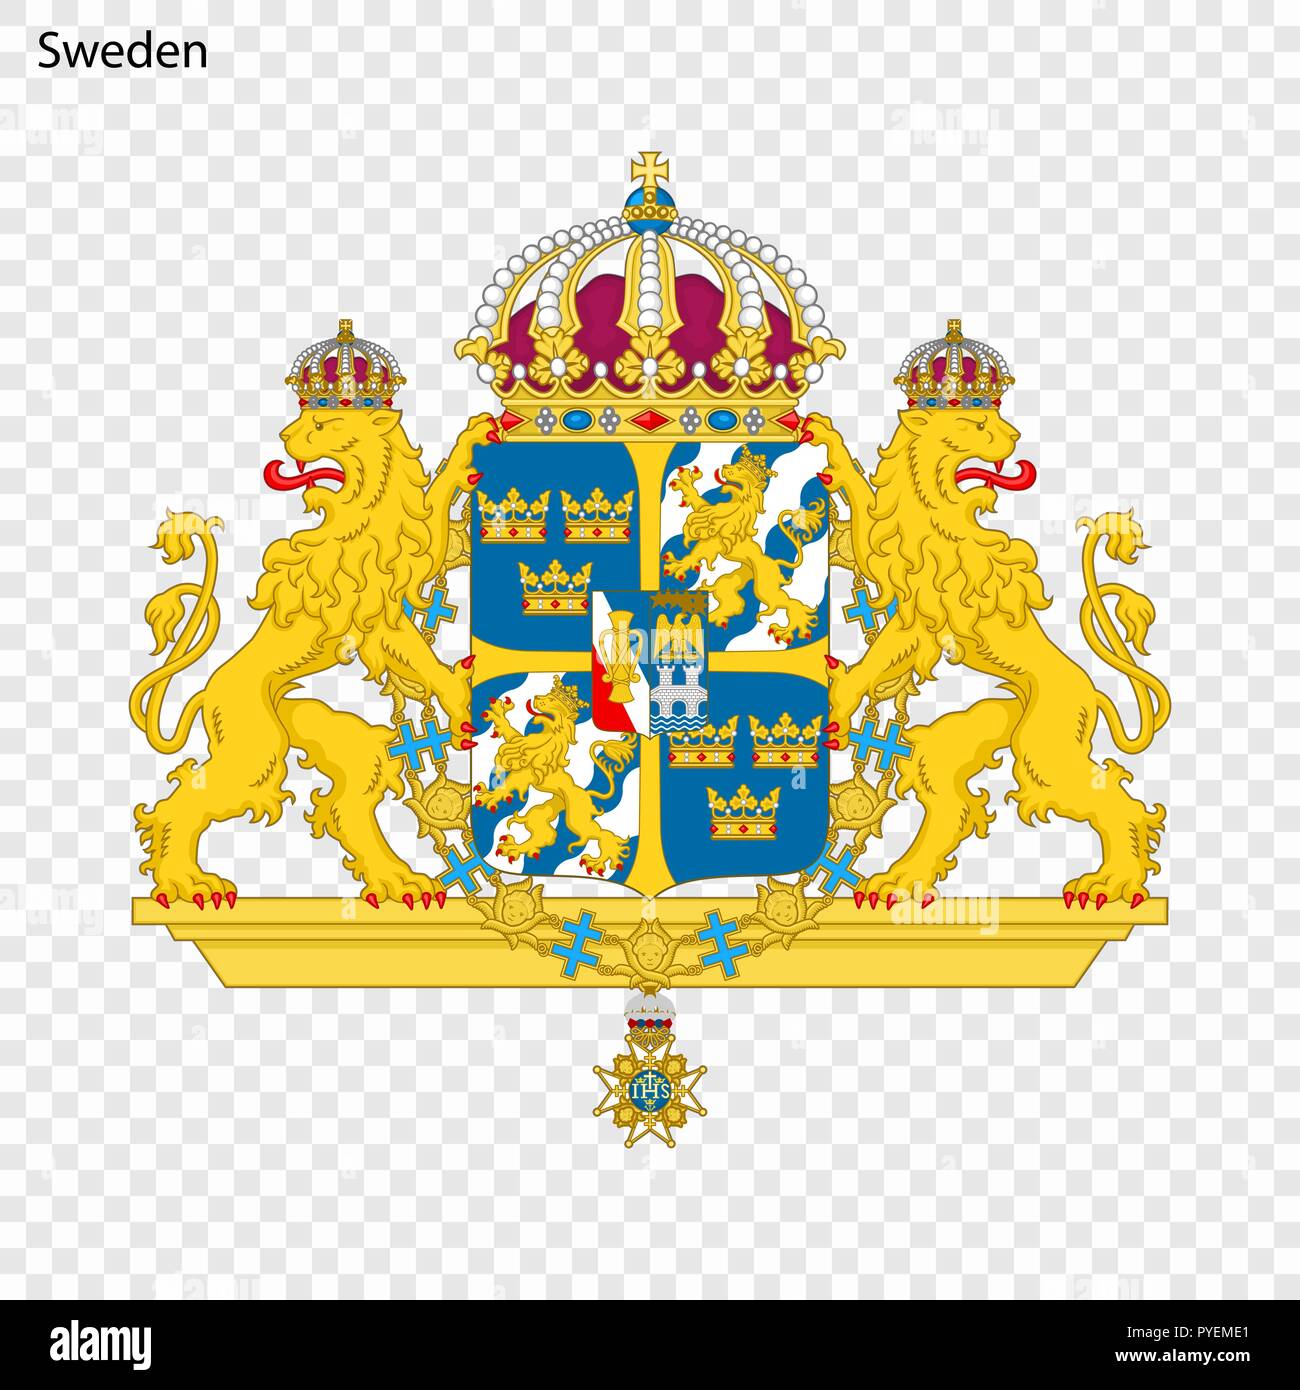 Symbol of Sweden. National emblem Stock Vector Image & Art - Alamy